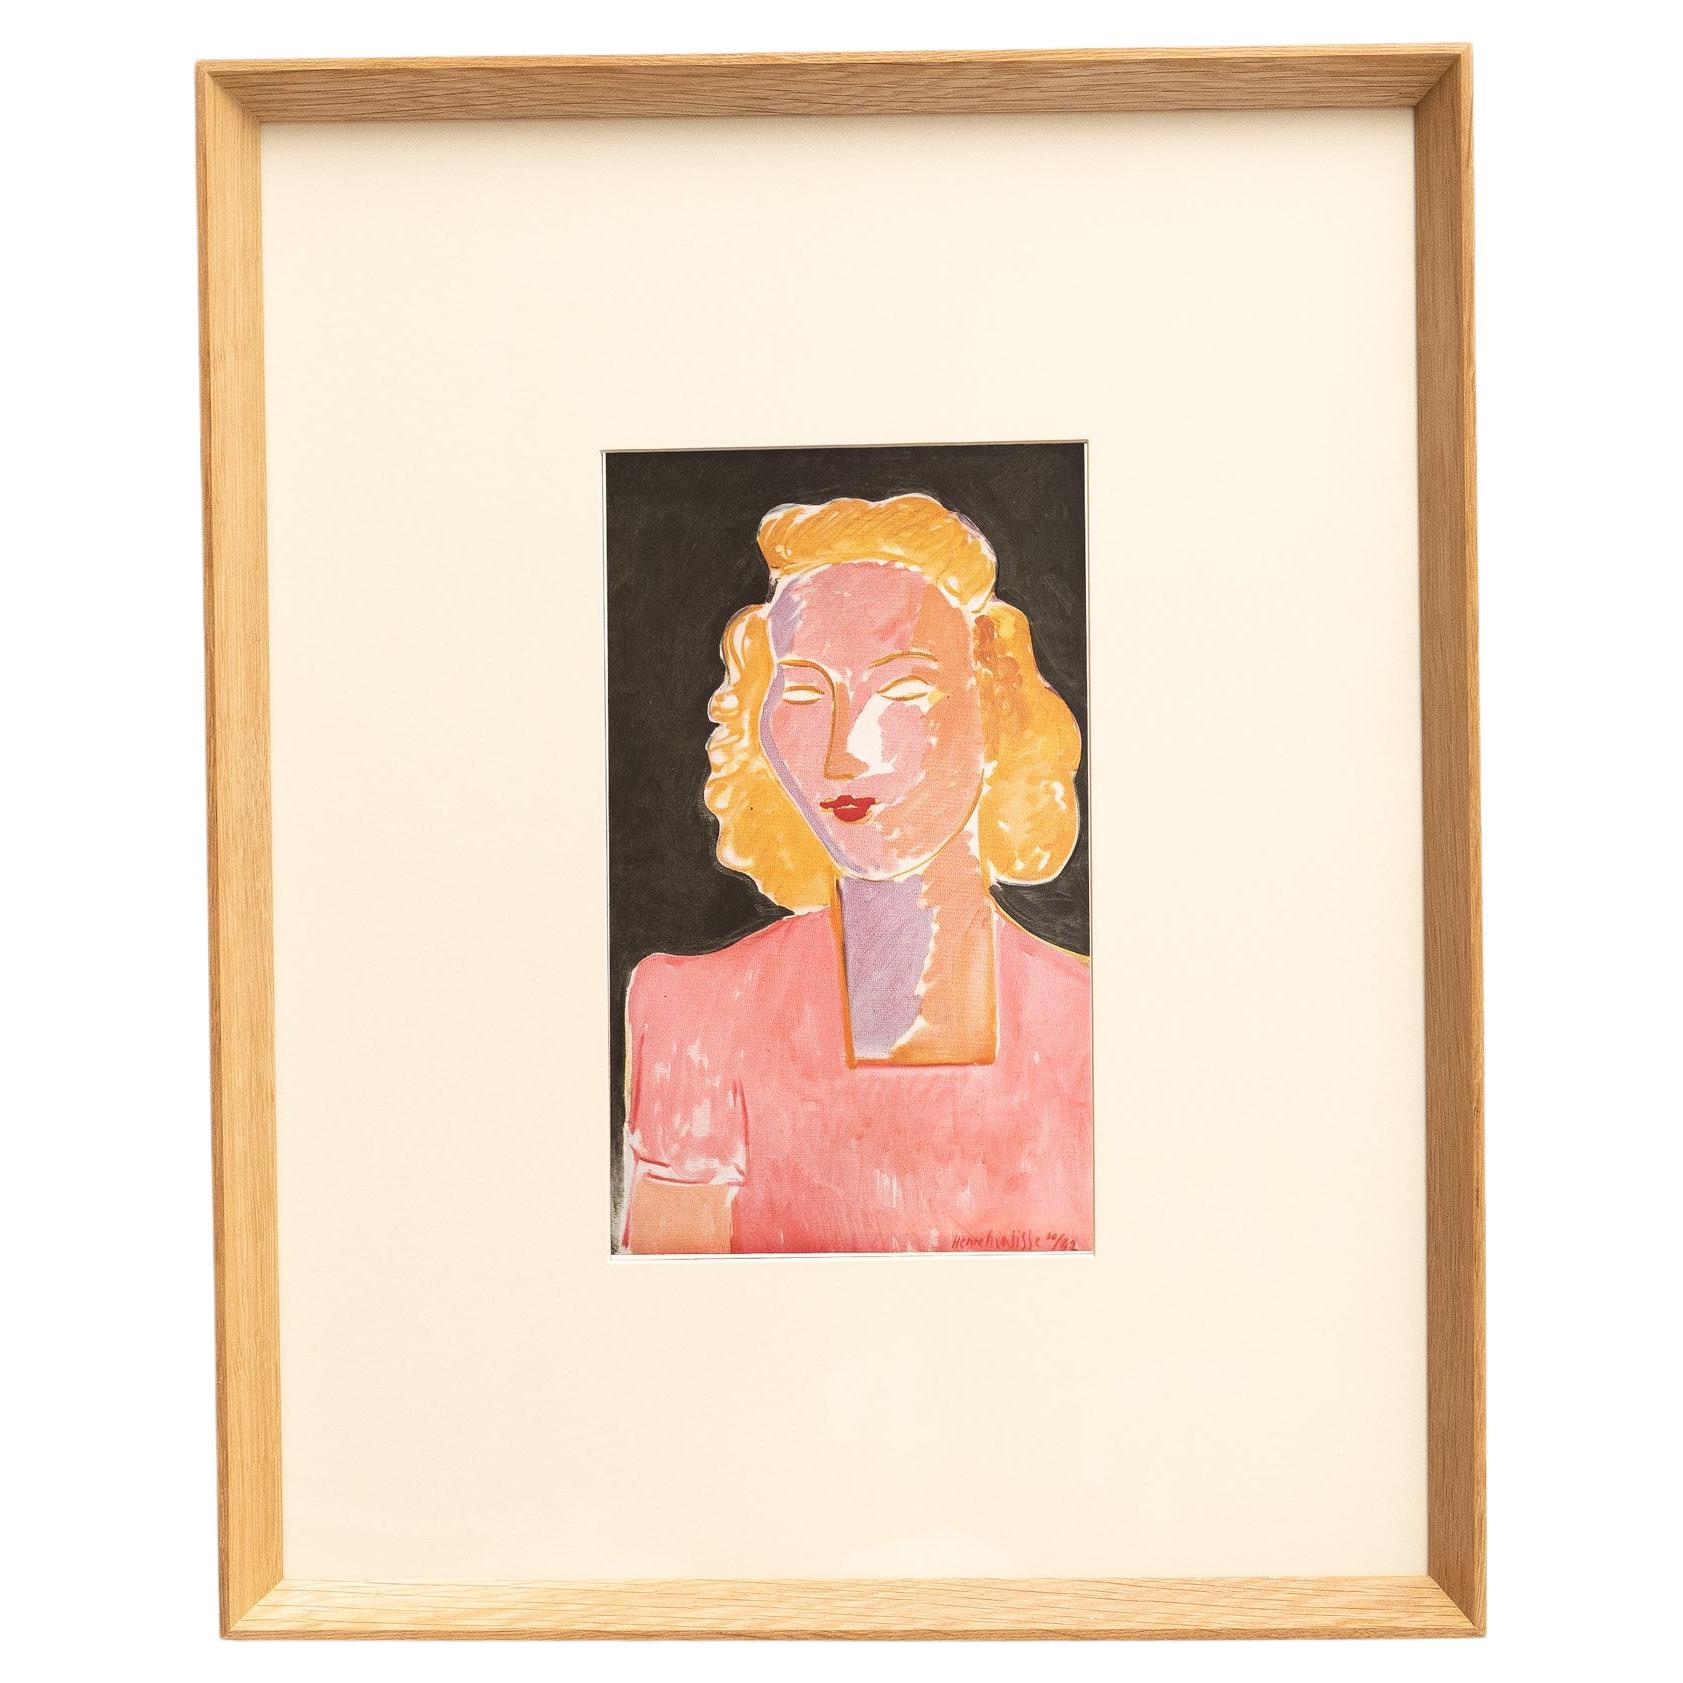 Rare Color Lithograph: A Glimpse into Matisse's Artistic Mastery